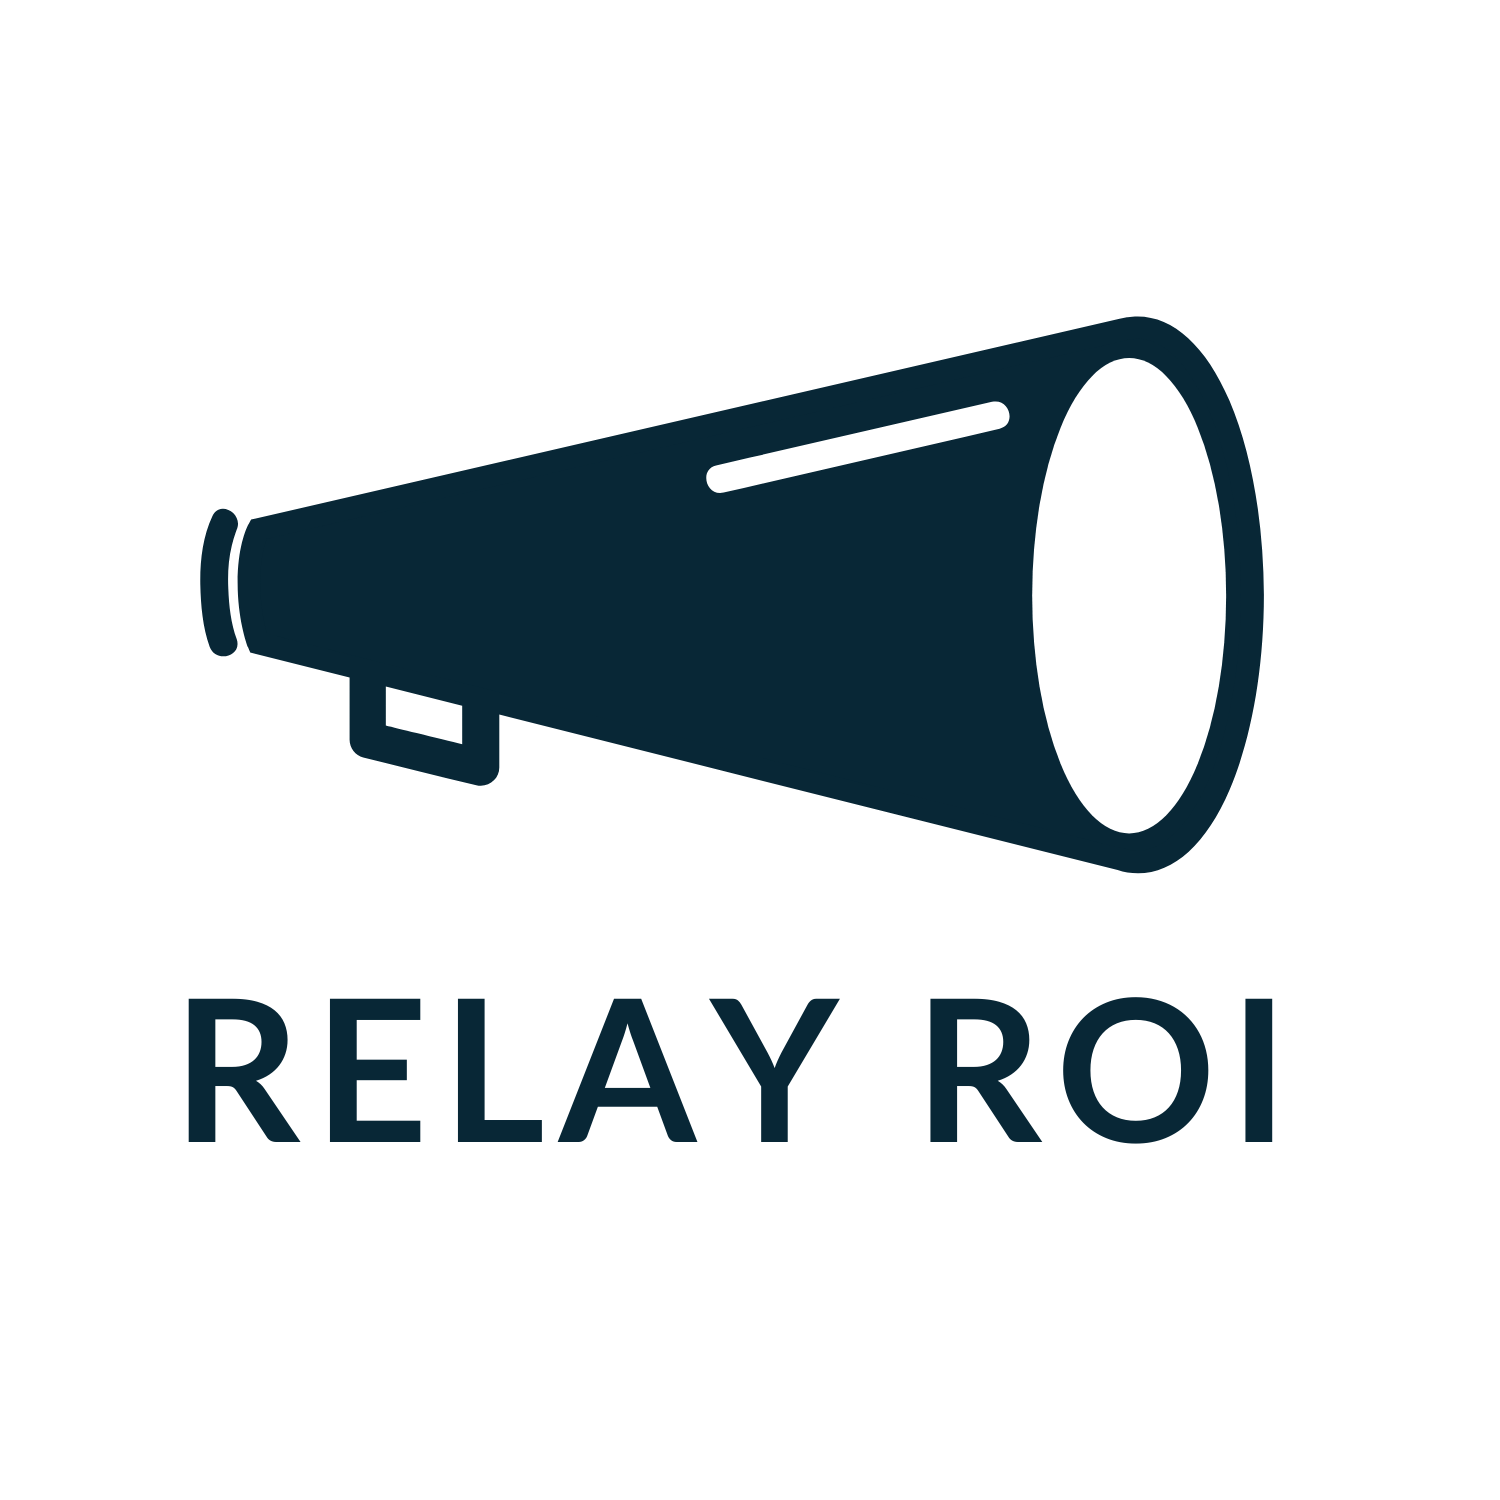 Relay ROI logo